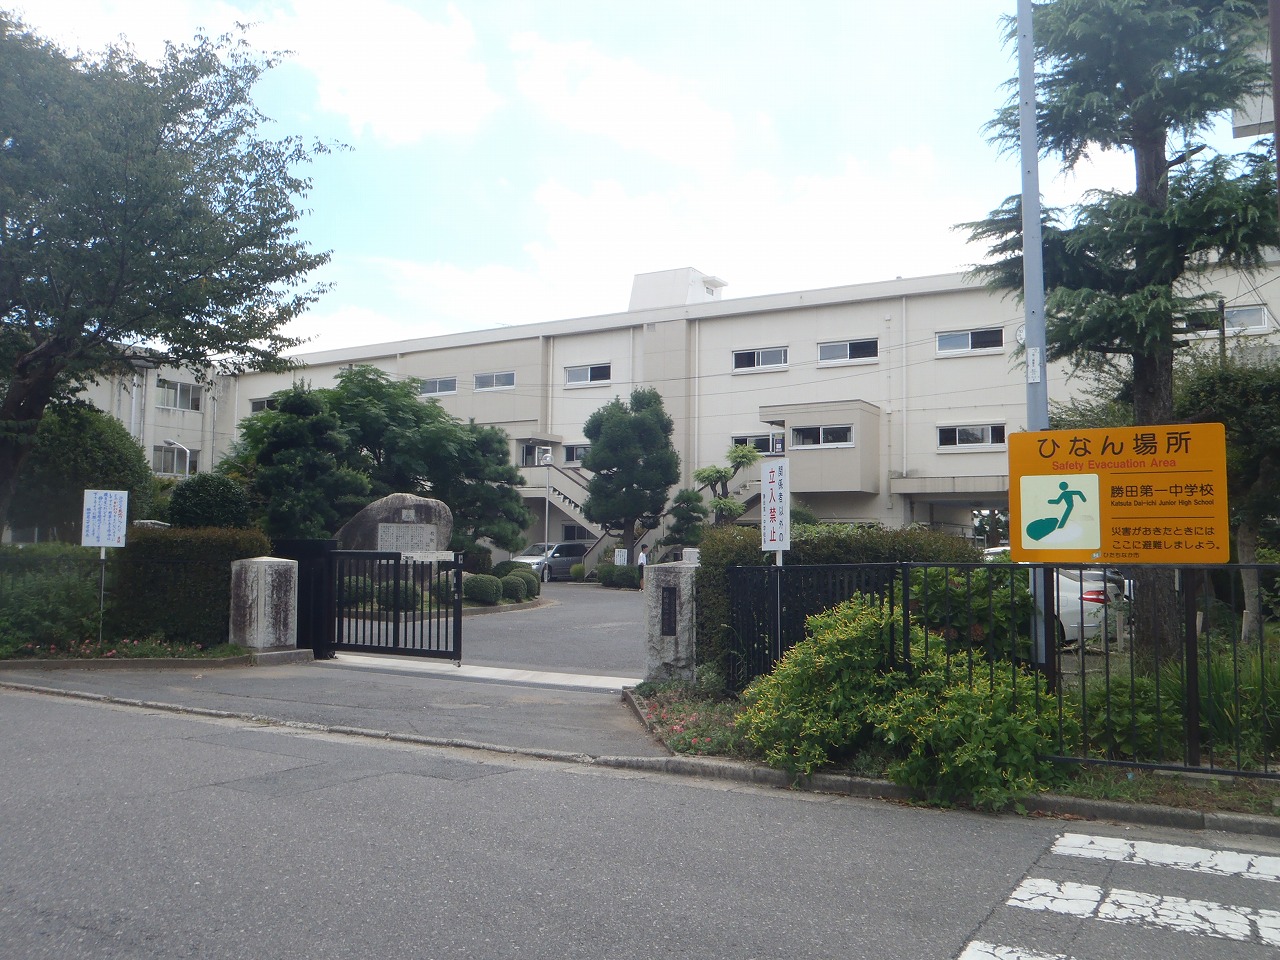 Junior high school. Hitachinaka Municipal Katsuta first junior high school (junior high school) up to 2300m